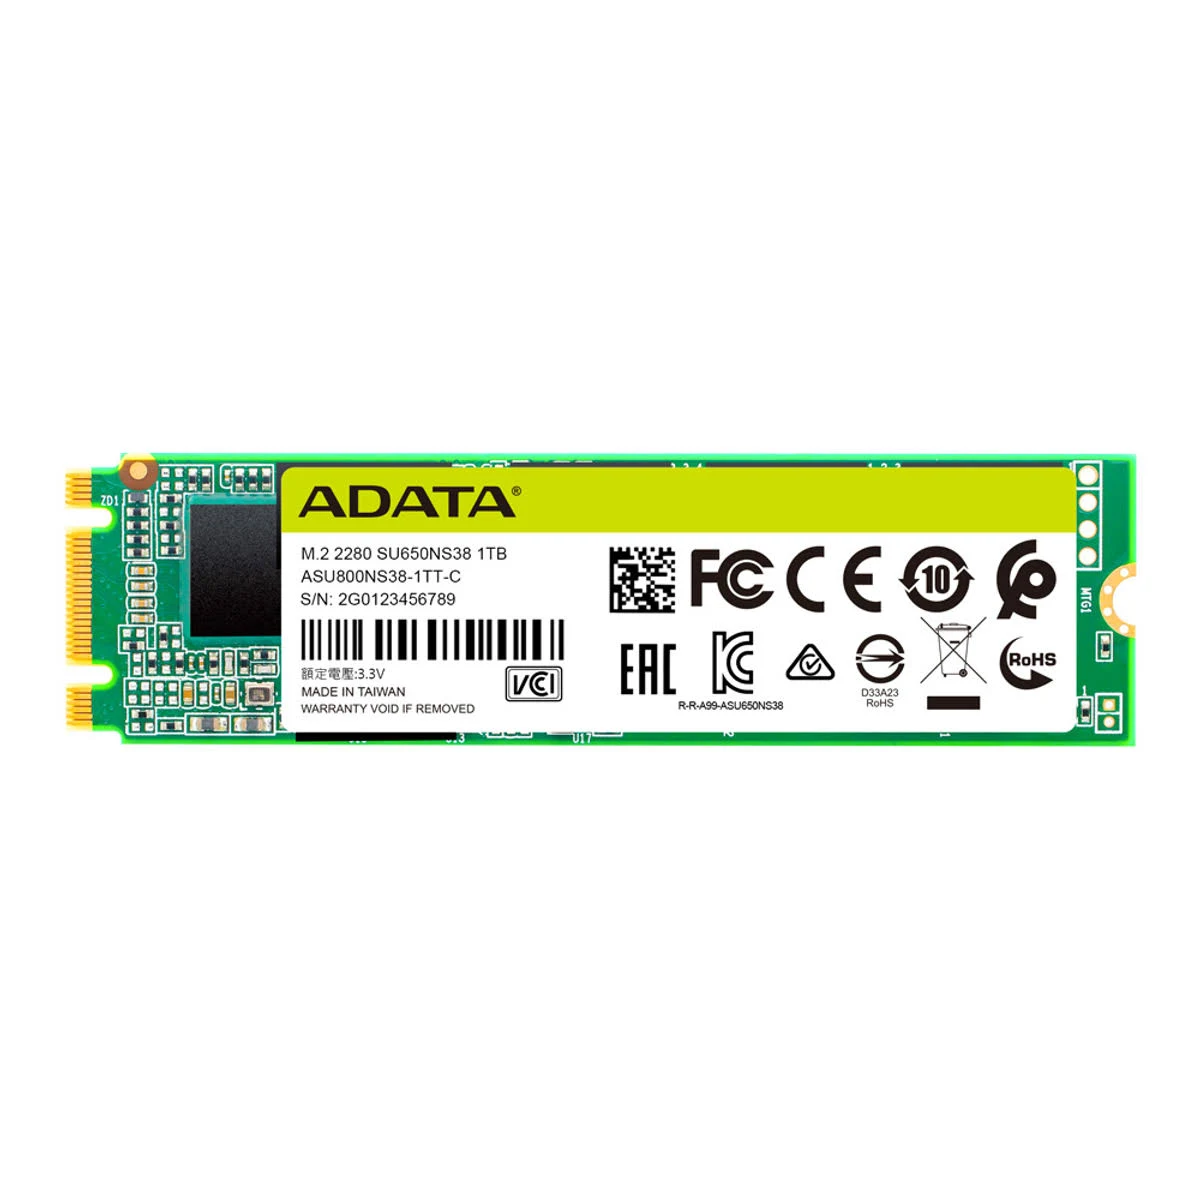 ADATA ASU650NS38-1TT-C, 1000 GB, SSD, Zoll, 2,5 intern